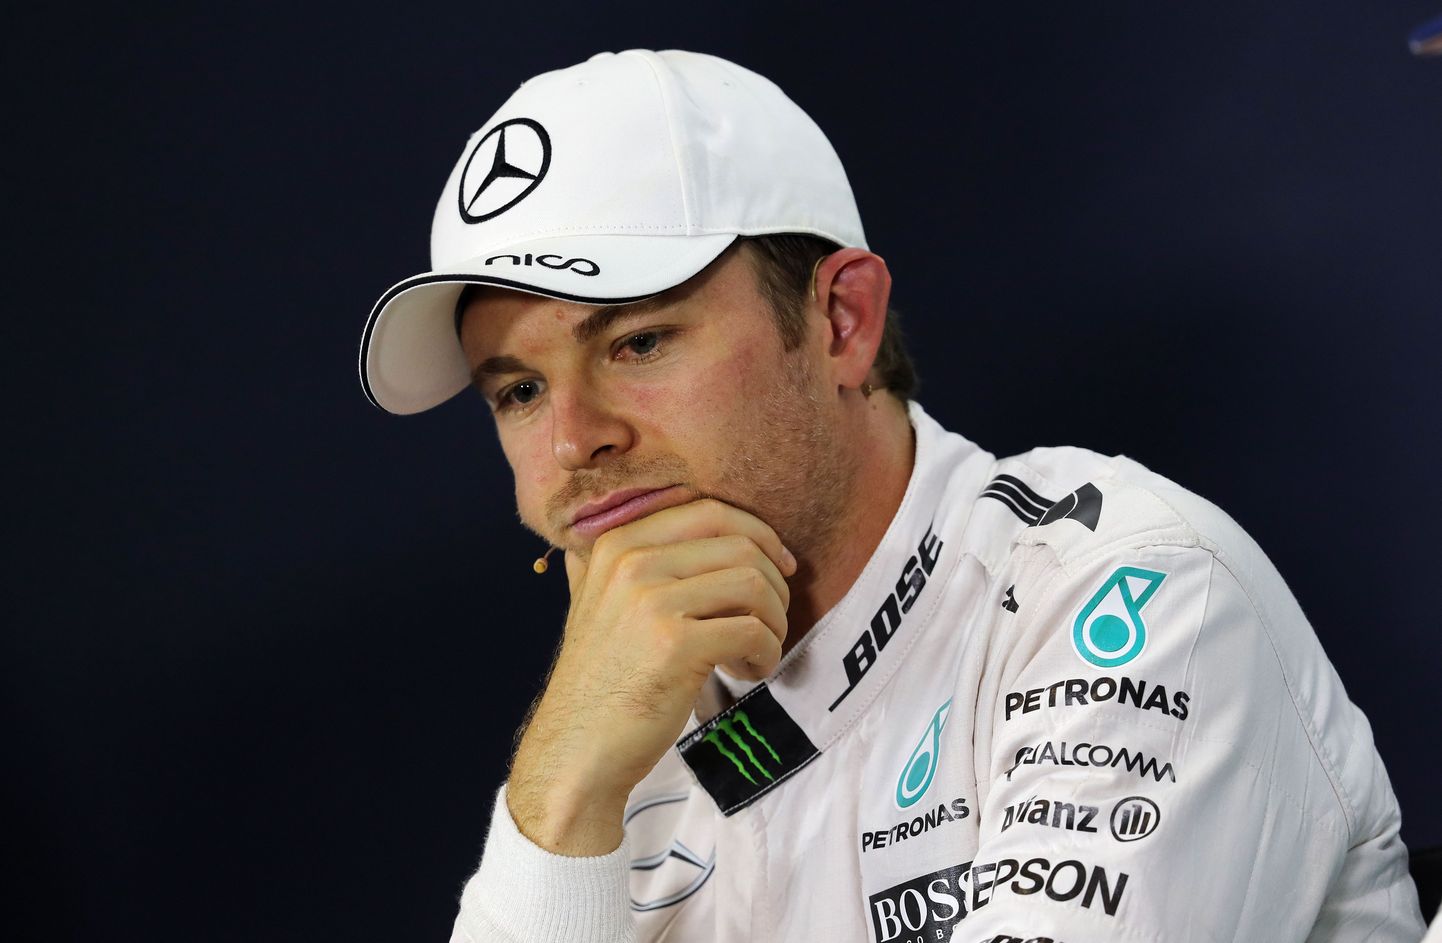 Nico Rosberg peab hooaja teises pooles kõvasti pingutama, et võidelda veel maailmameistritiitli nimel.